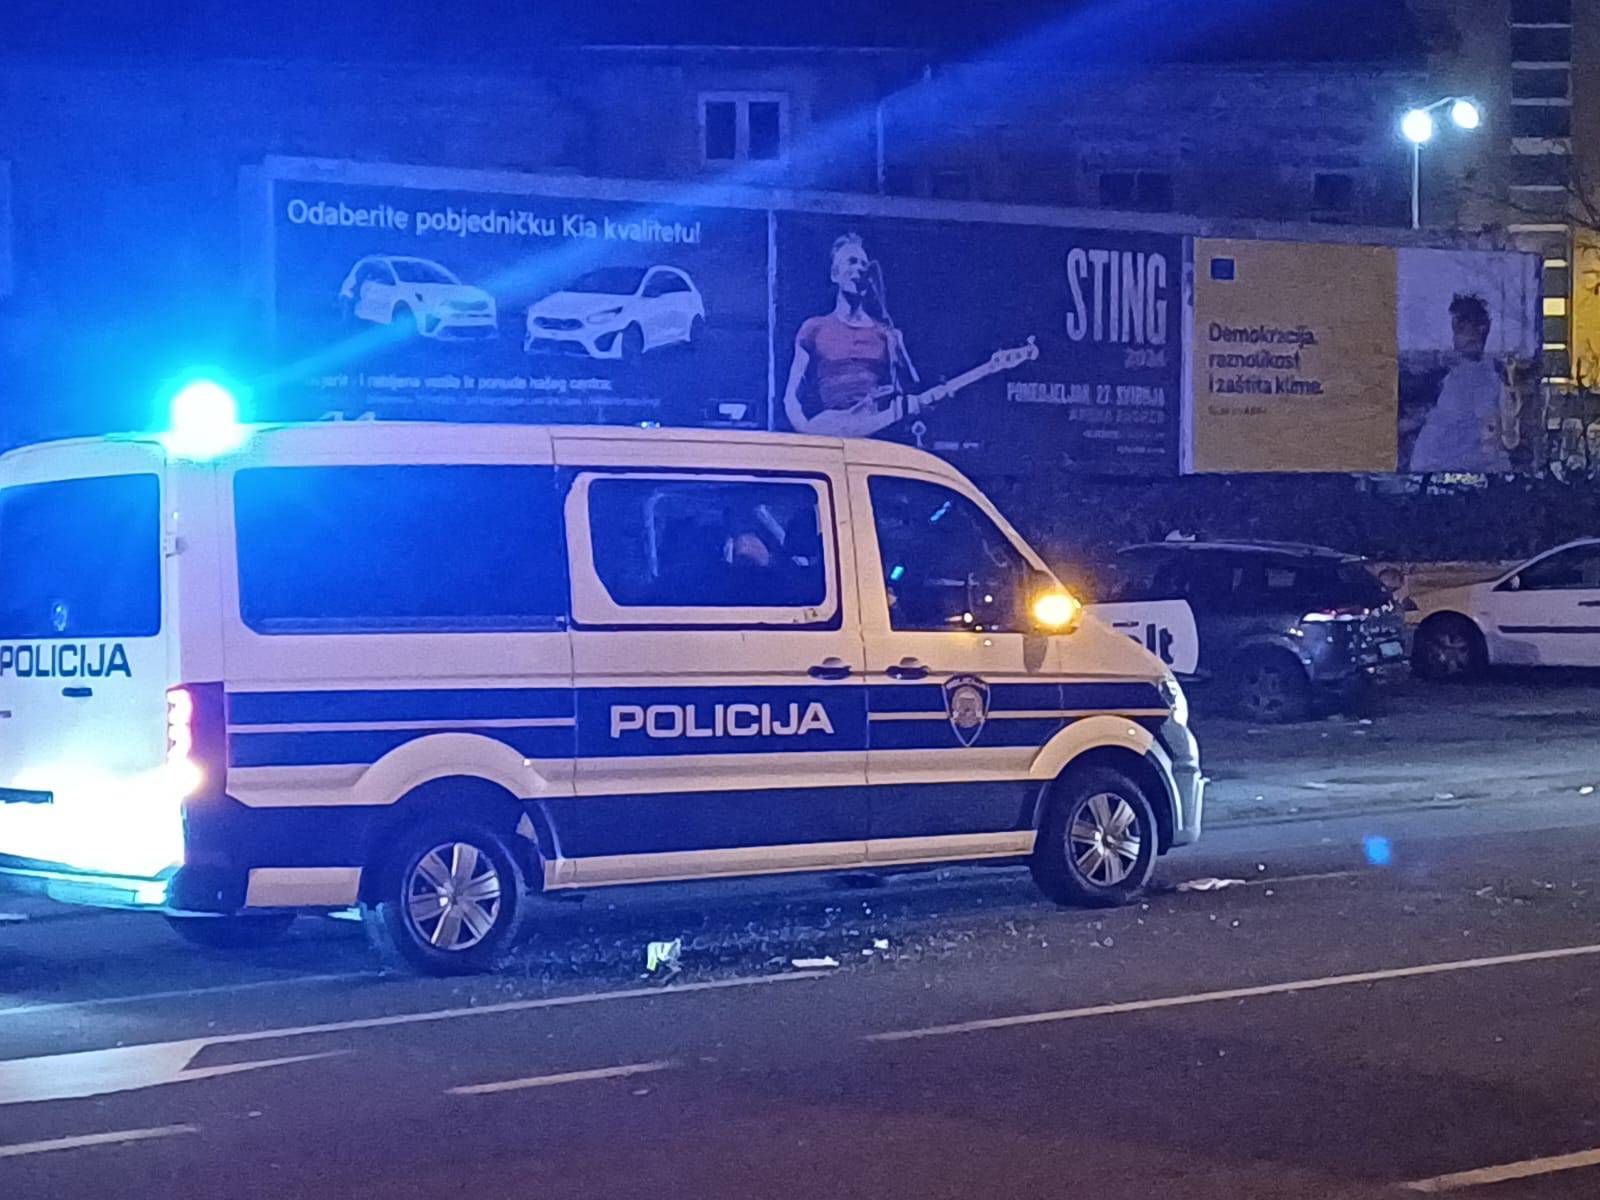 Uživo nakon sukoba navijača i policije u Zagrebu: Dio navijača završio na podu, dvojicu priveli